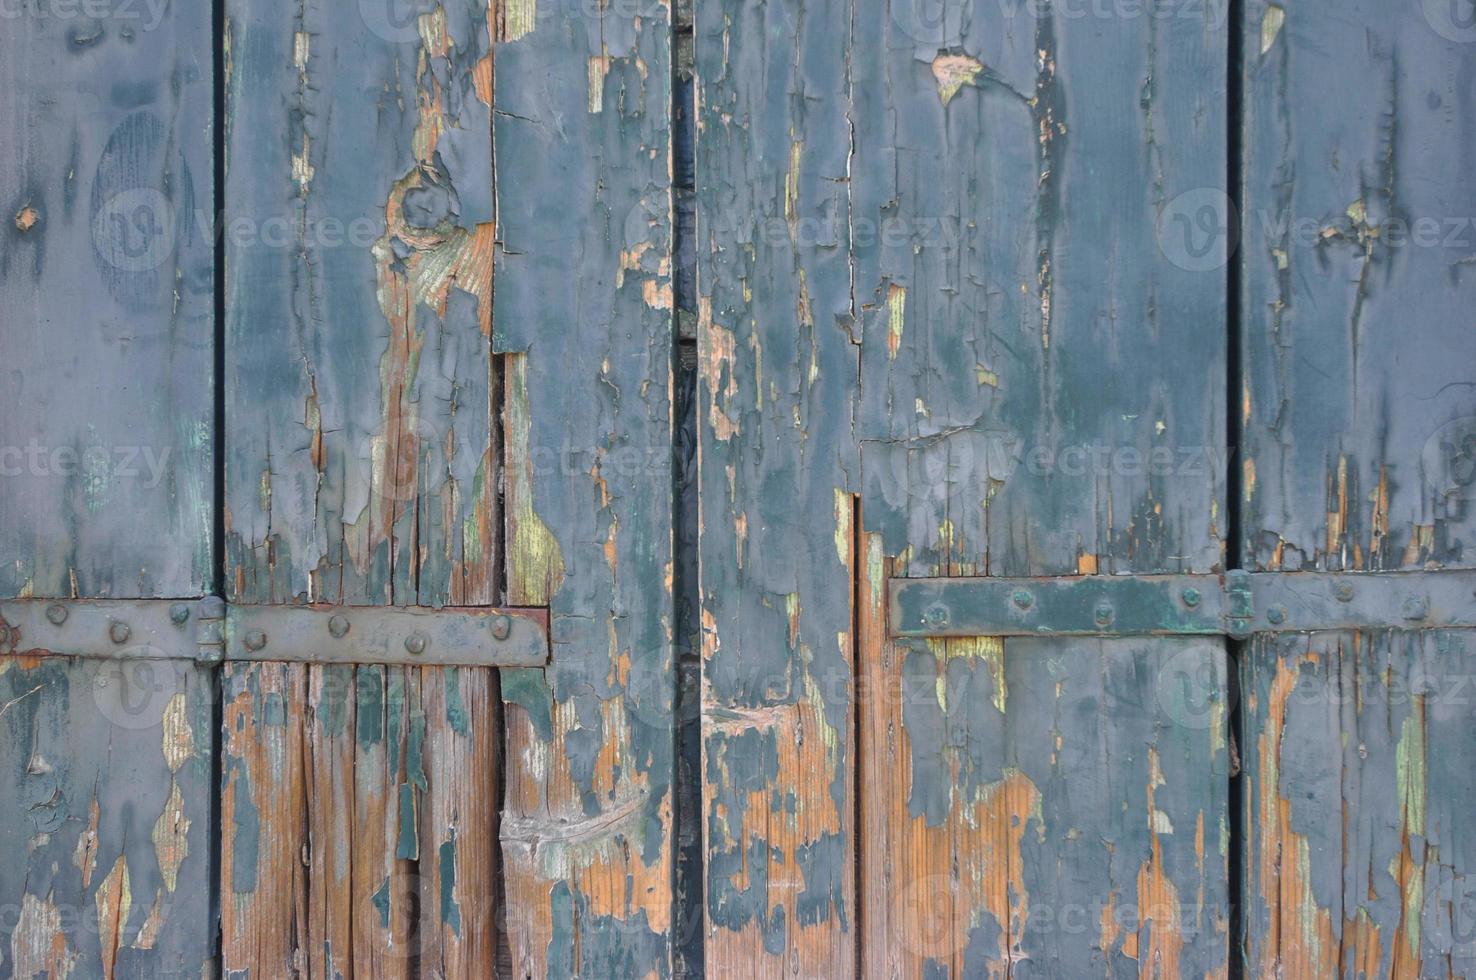 fondo de textura de madera azul foto